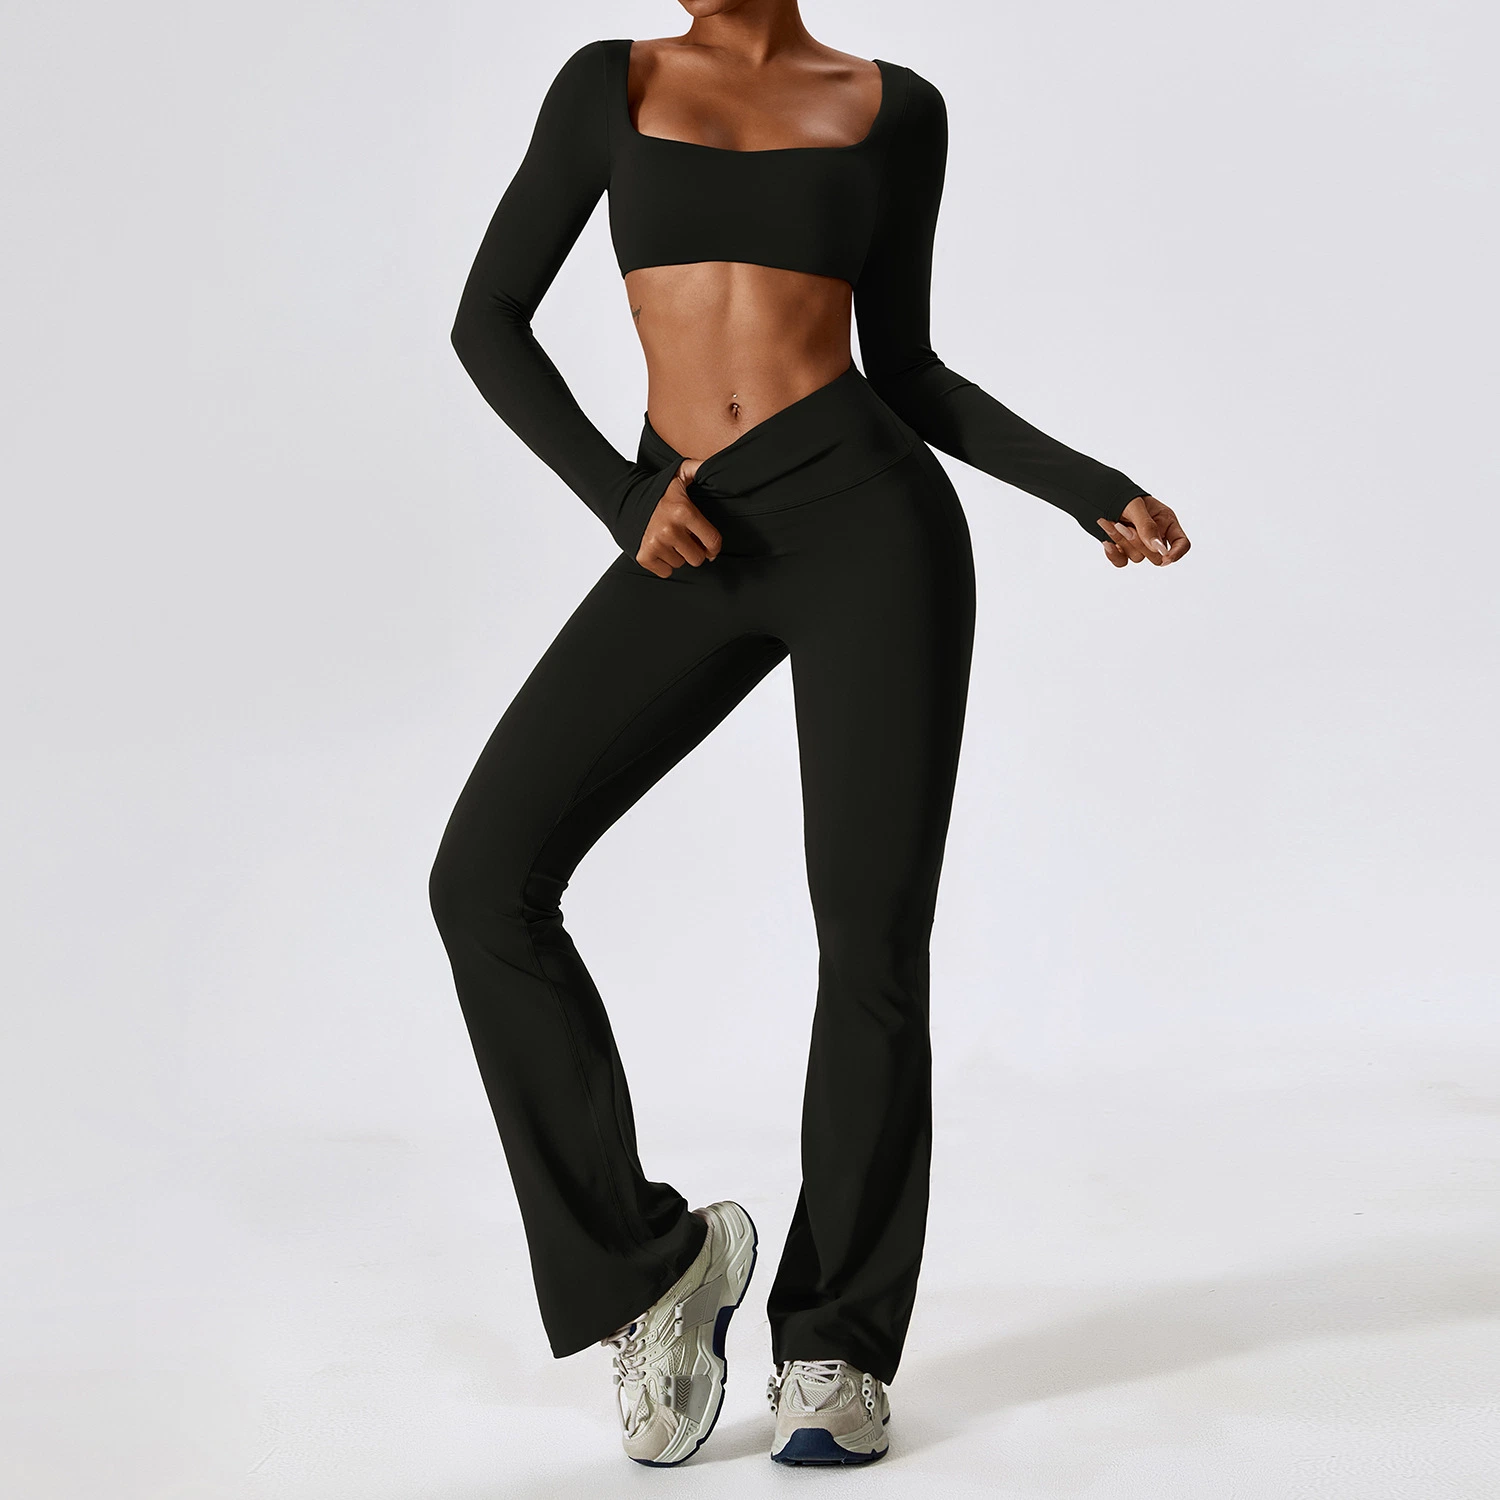 سروال يوغا إضافي مع ملابس رياضية عالية الجودة من OEM تمارين ذات حجم كبير مجموعات اللياقة البدنية للنساء